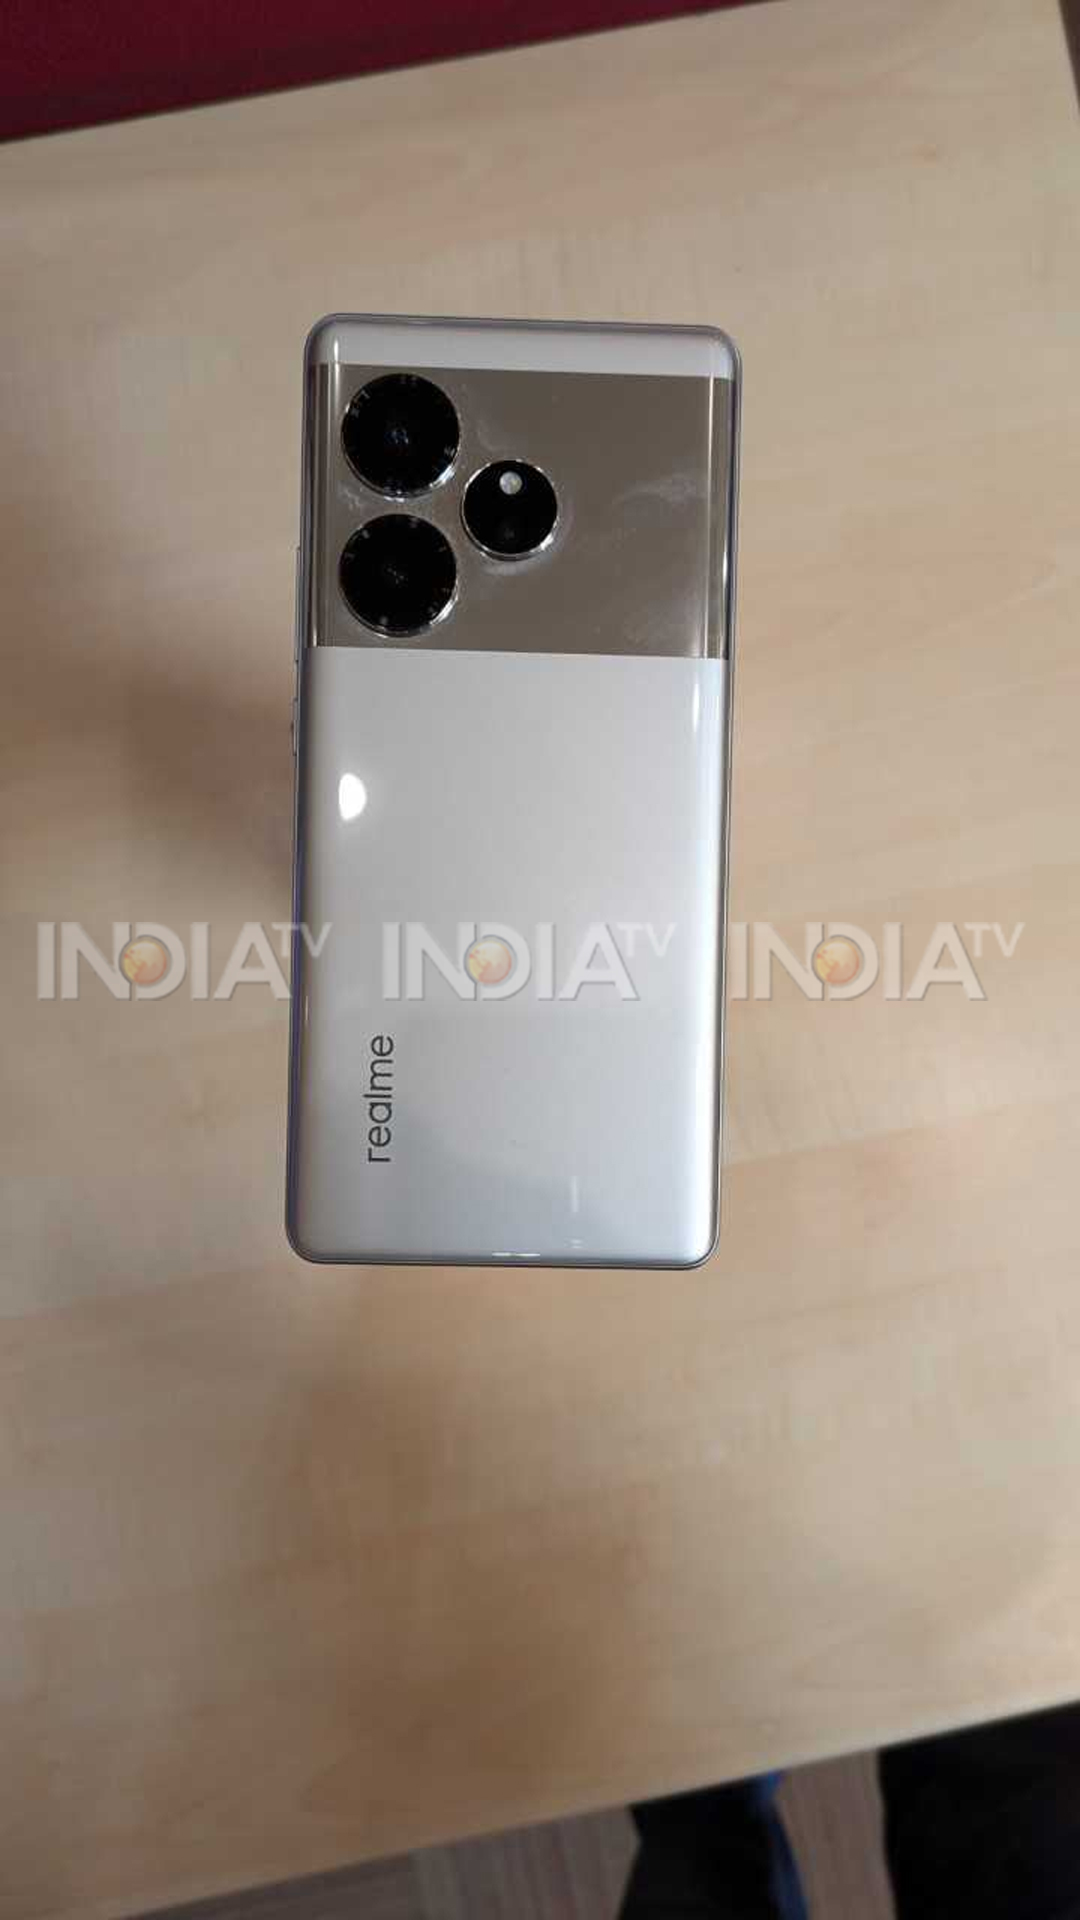 Realme का AI फीचर वाला धांसू फोन भारत में लॉन्च, देखें First Look